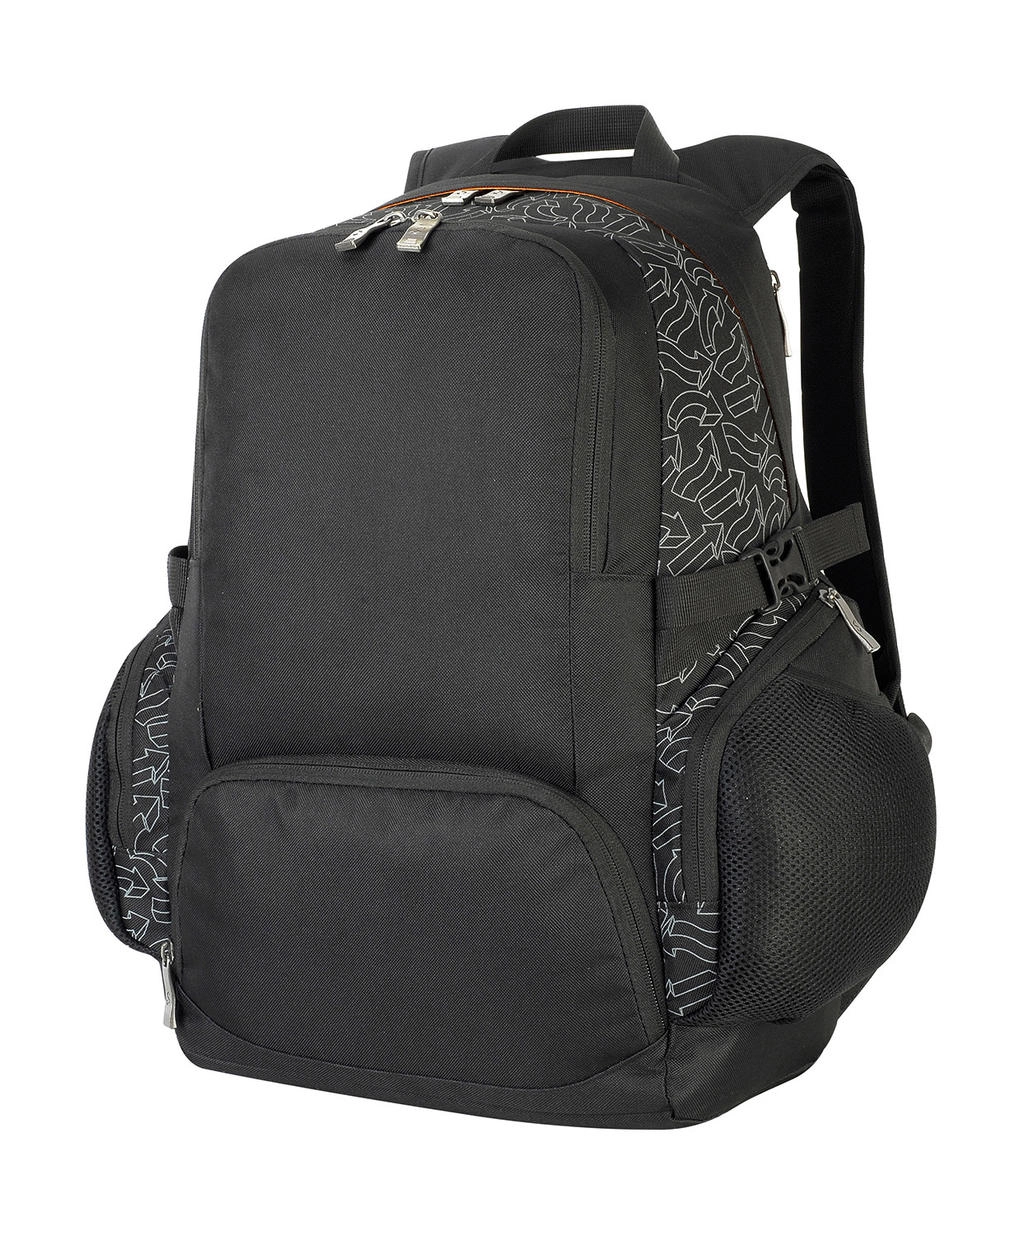 London Backpack zum Besticken und Bedrucken in der Farbe Black mit Ihren Logo, Schriftzug oder Motiv.